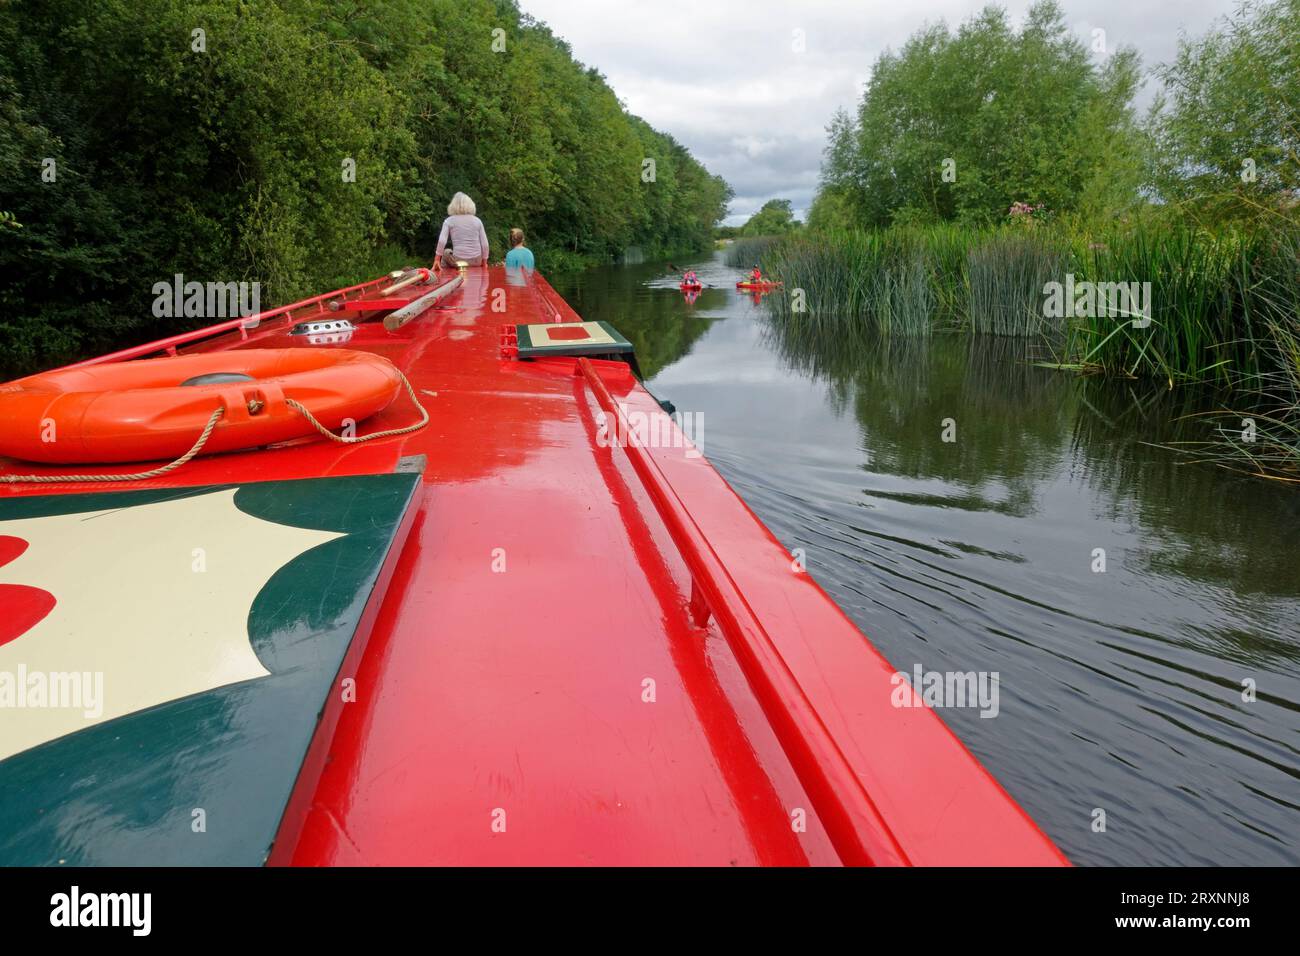 Persone su narrowboatd rossi che guardano i paddleboarder sul tranquillo tratto del fiume Avon vicino a Evesham nel Regno Unito Foto Stock